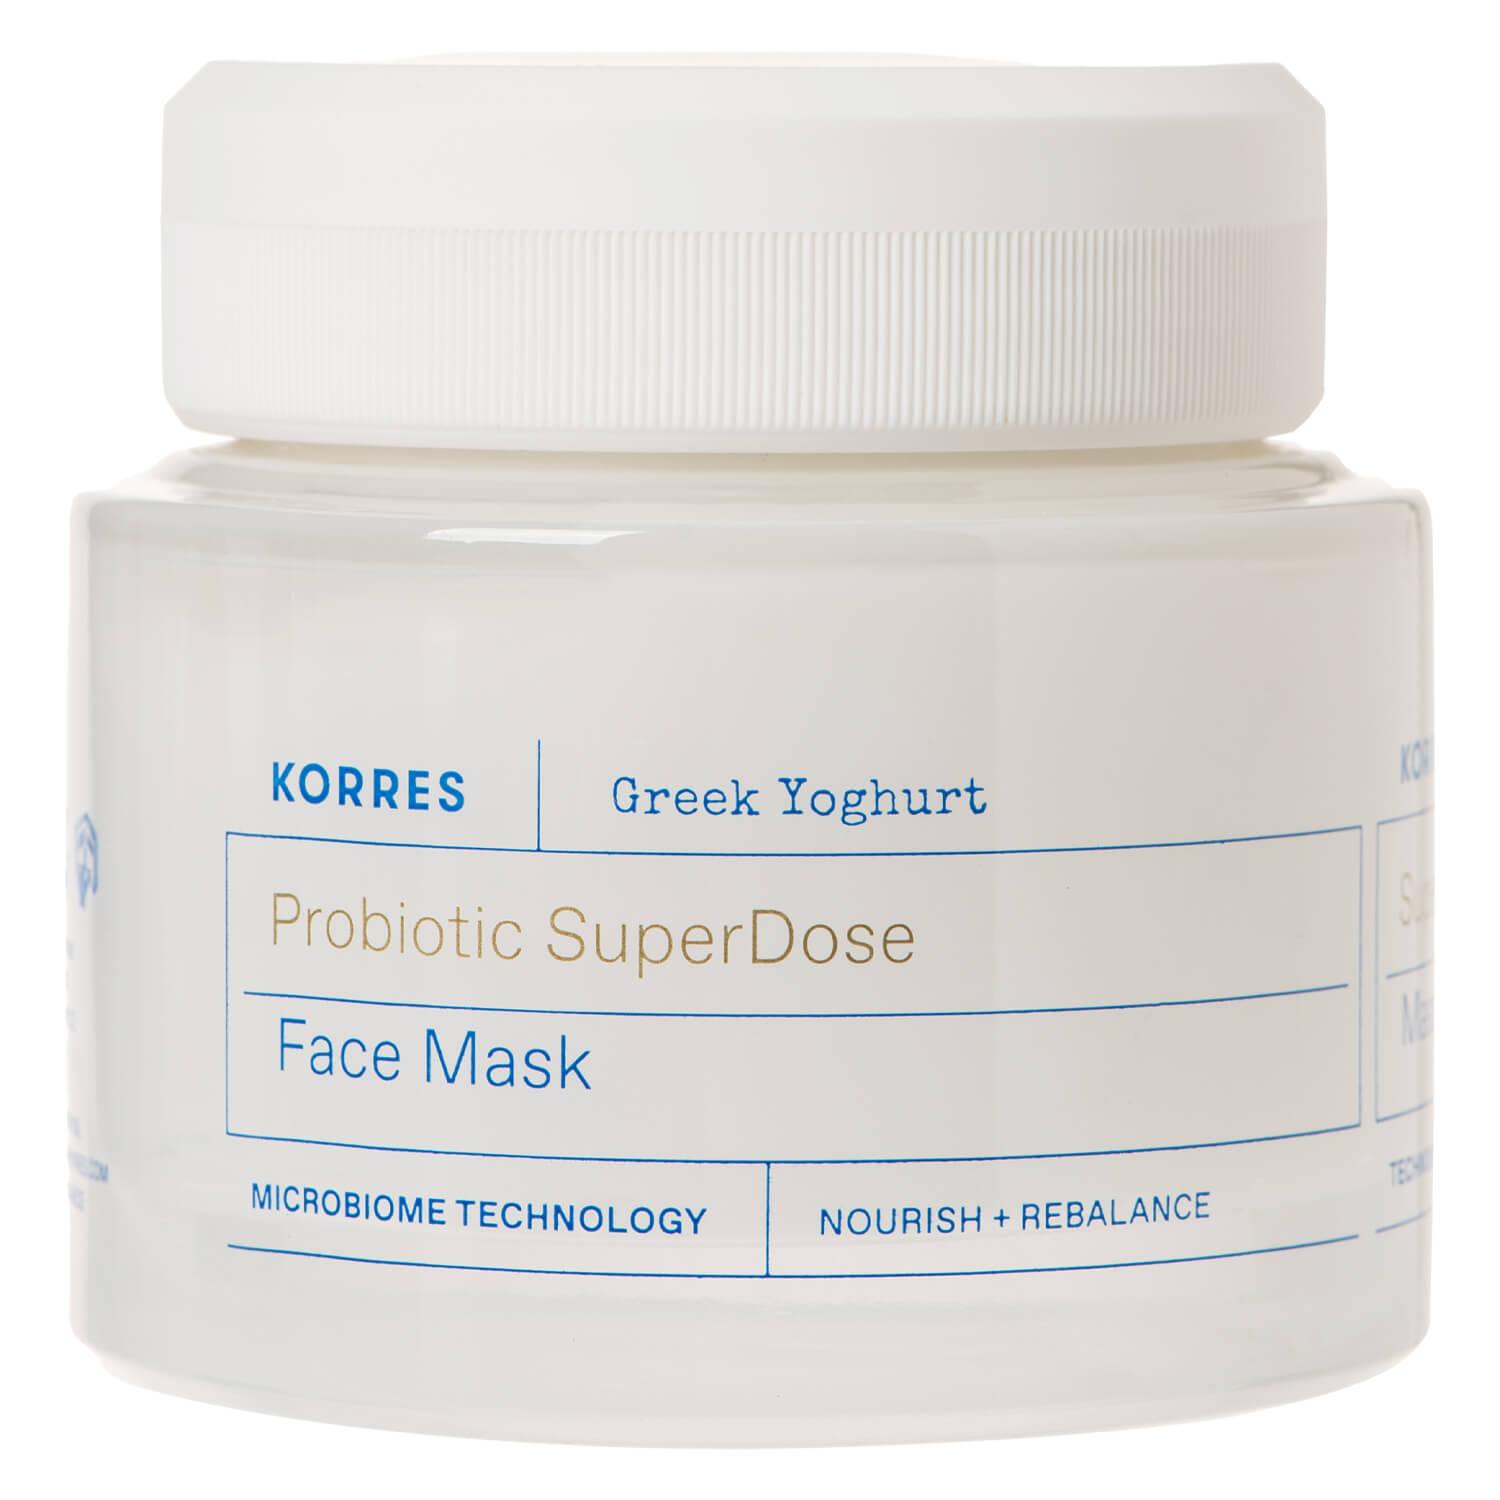 Korres Care - Greek Yoghurt Probiotic SuperDose Face Mask